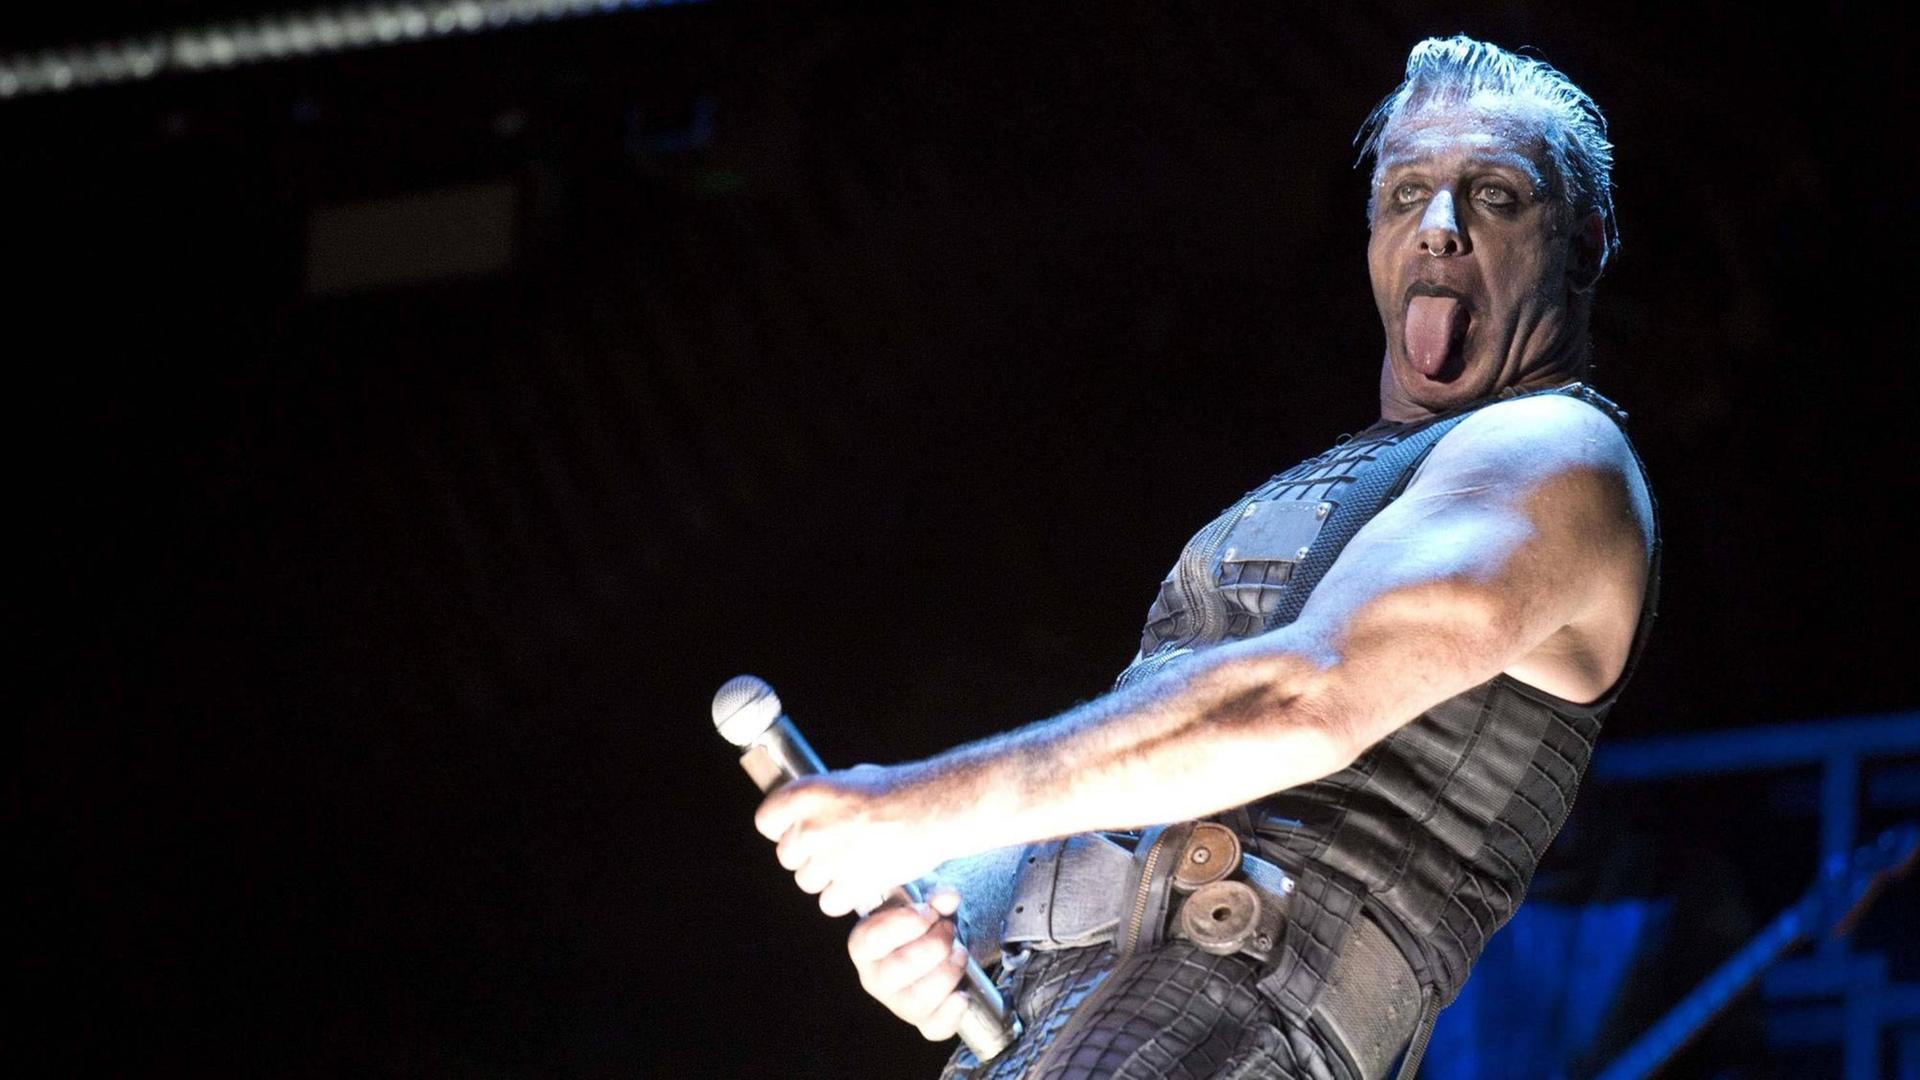 Der Sänger der Band Rammstein steht auf einer dunklen Bühne und streckt seine Zunge raus. Das Mikro hält er in der rechten Hand in frivoler Geste vor seinen Unterleib.